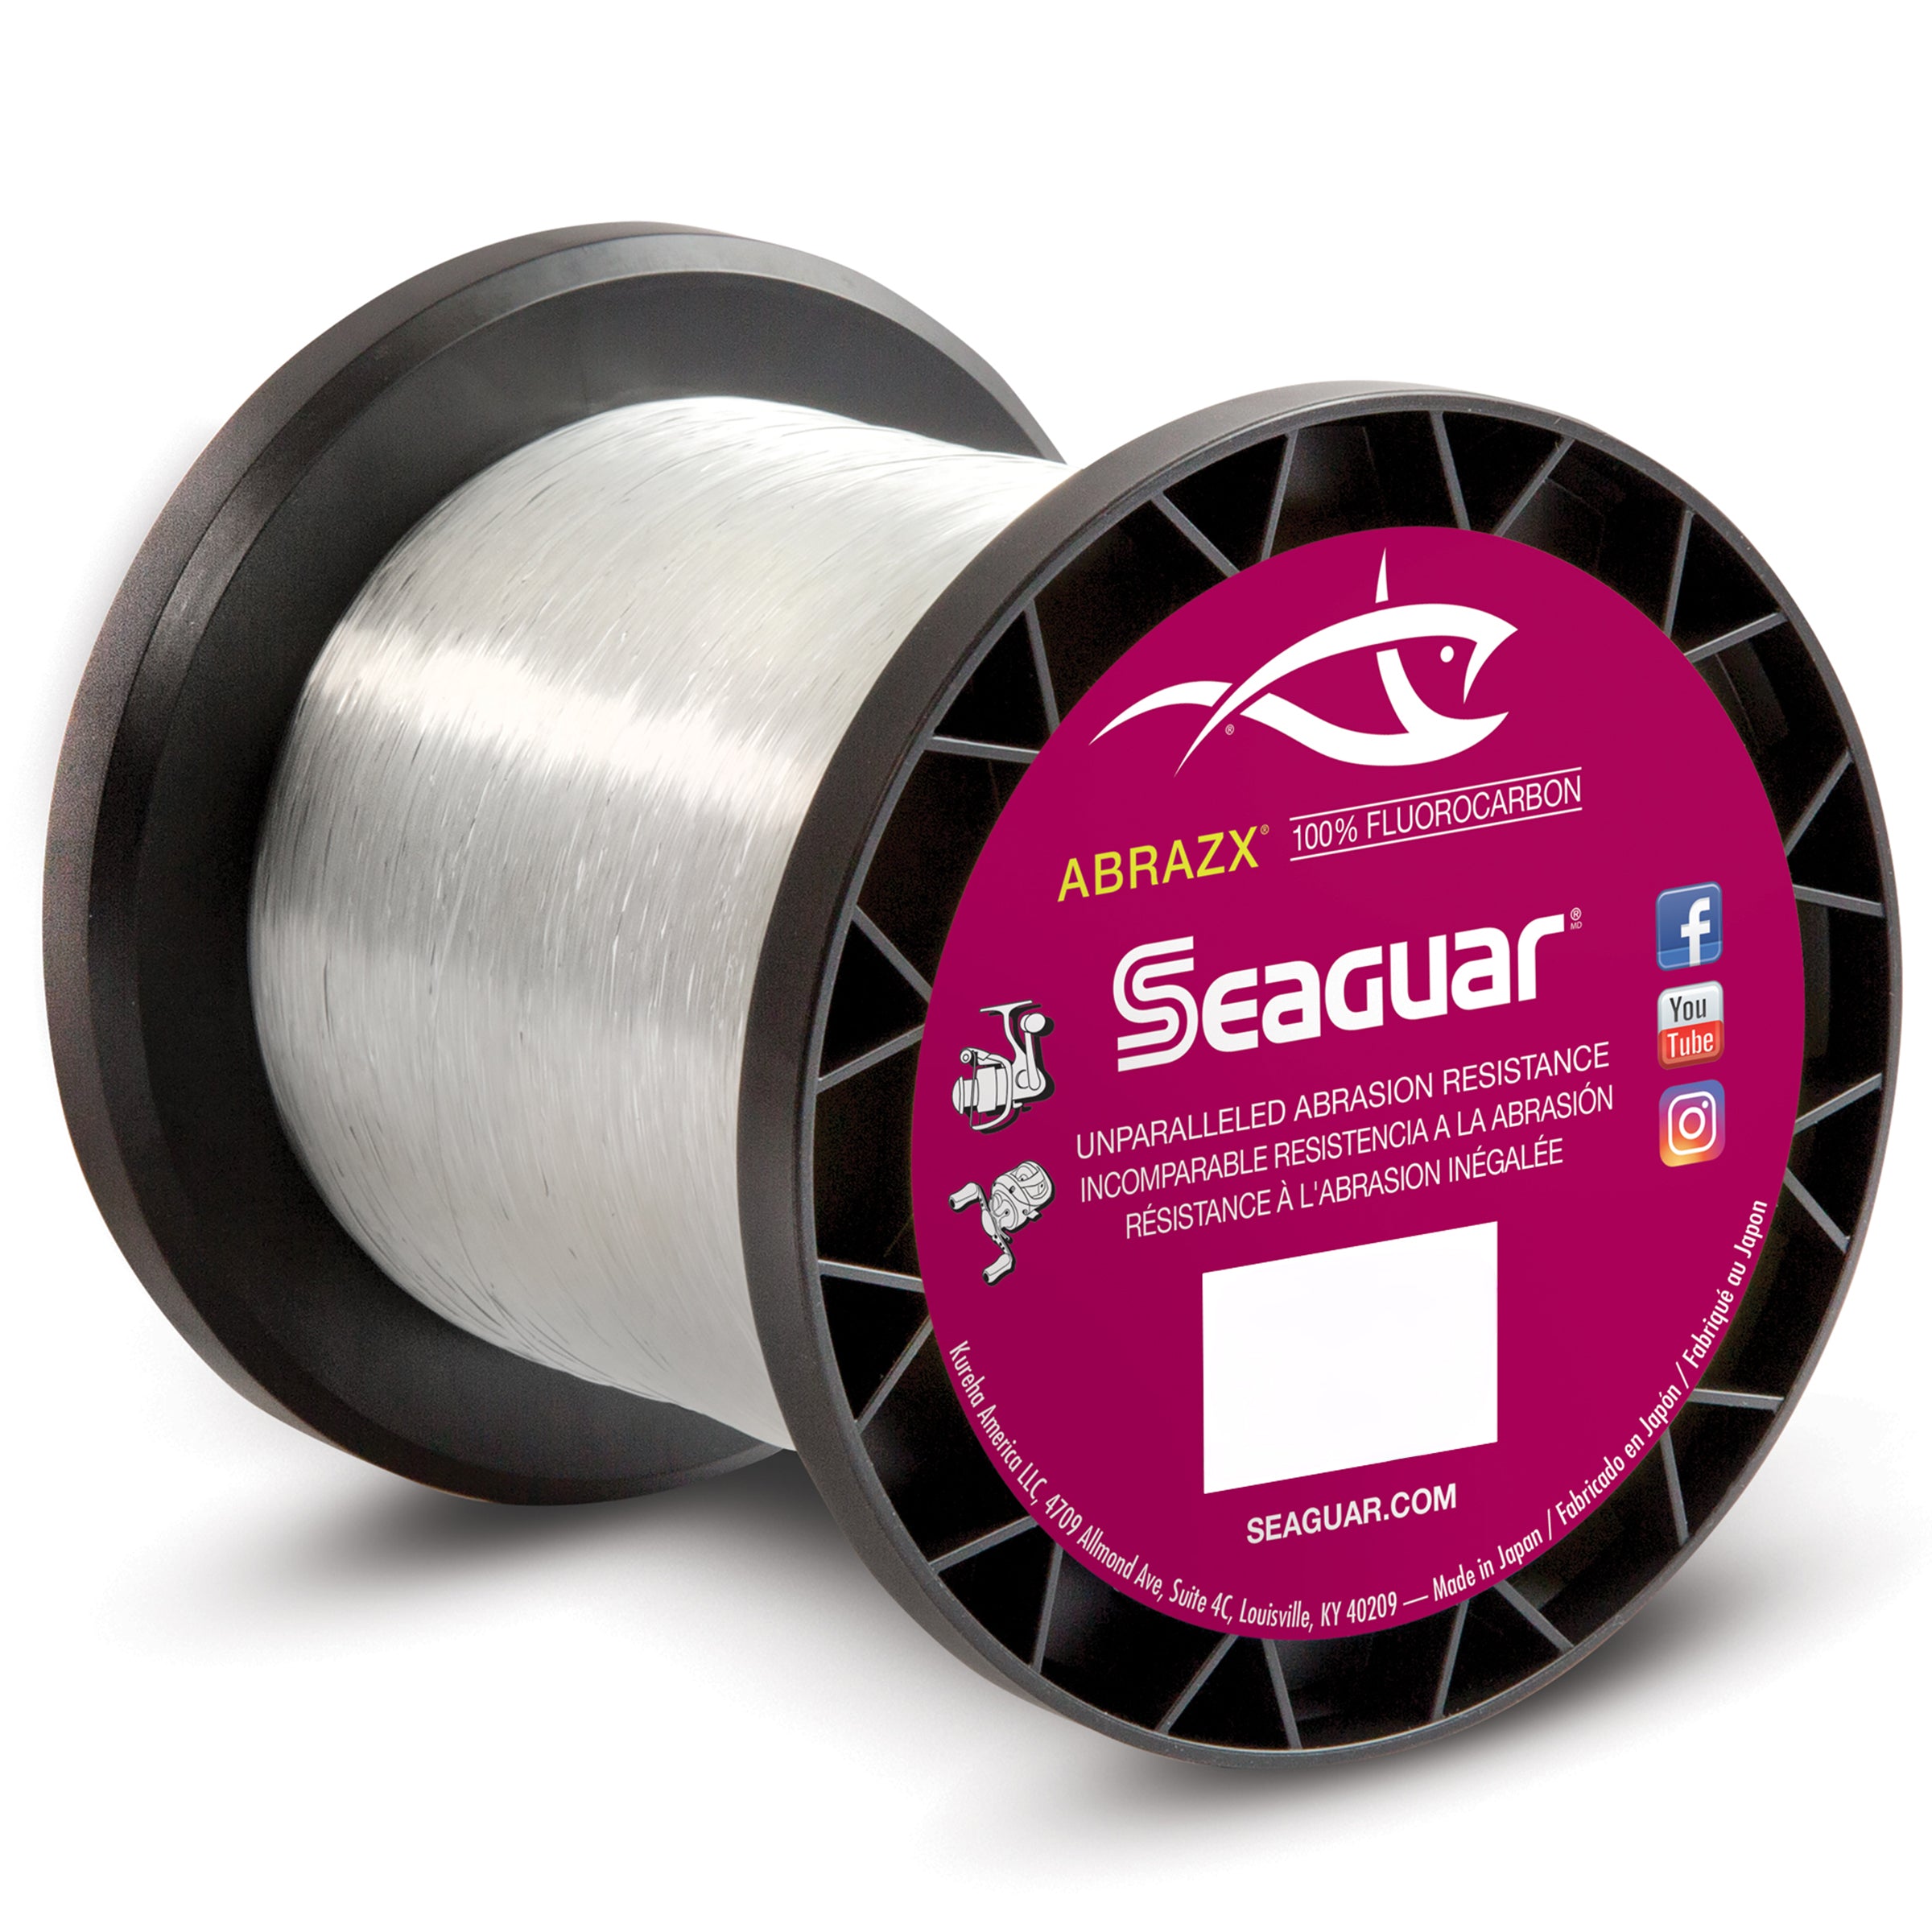 Seaguar Abrazx 100 Fluorocarbon 200 Yard Fishing Line 15-pound